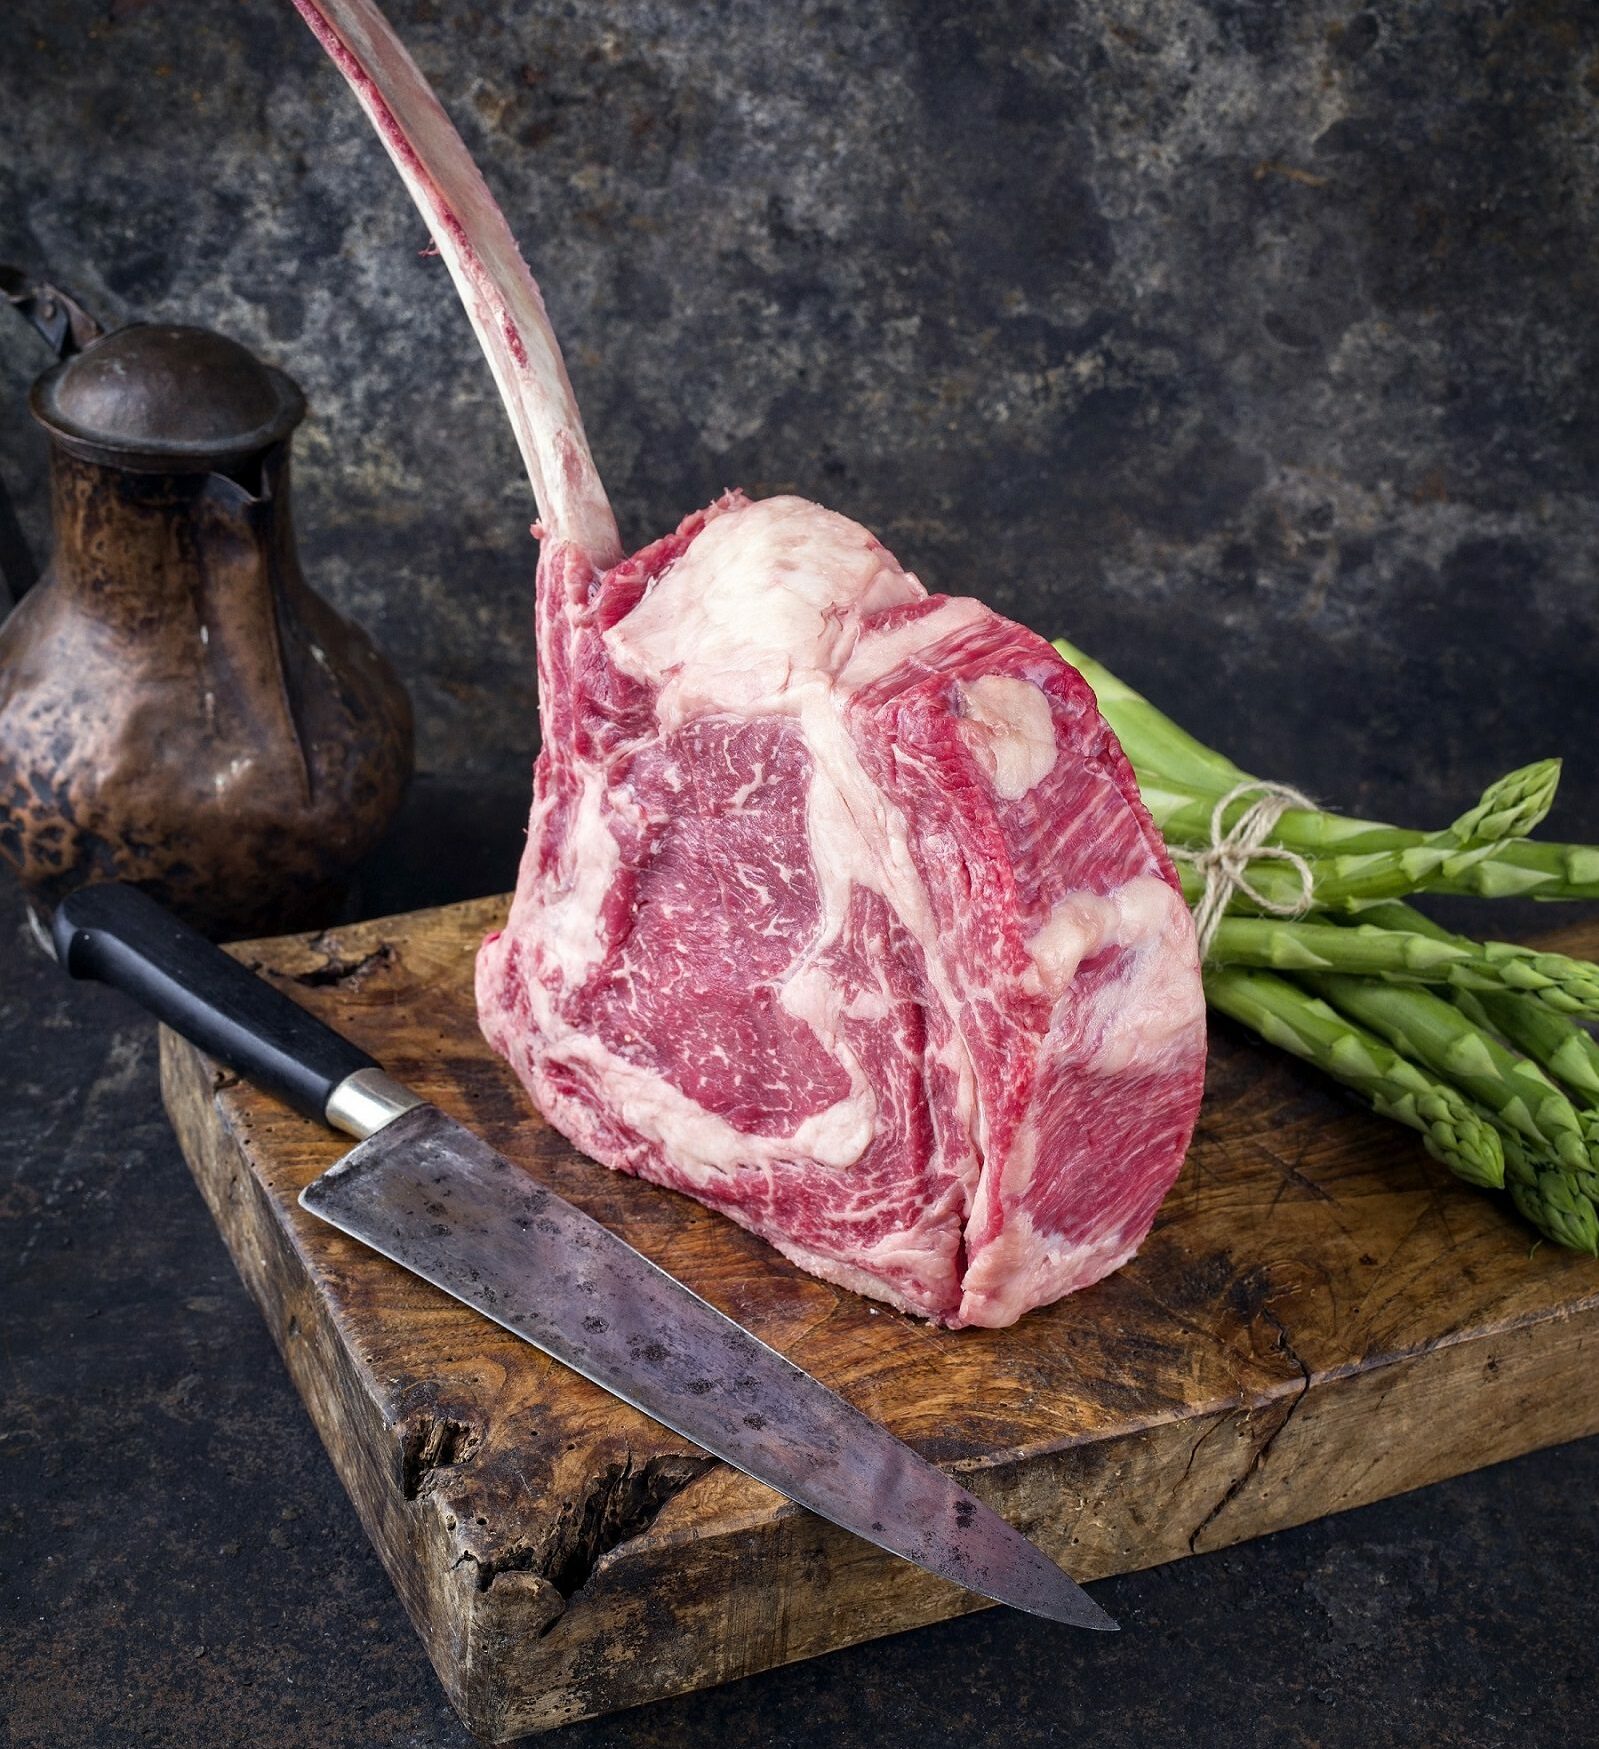 Premium-Rindfleischprodukte nach neuesten Consumer Trends